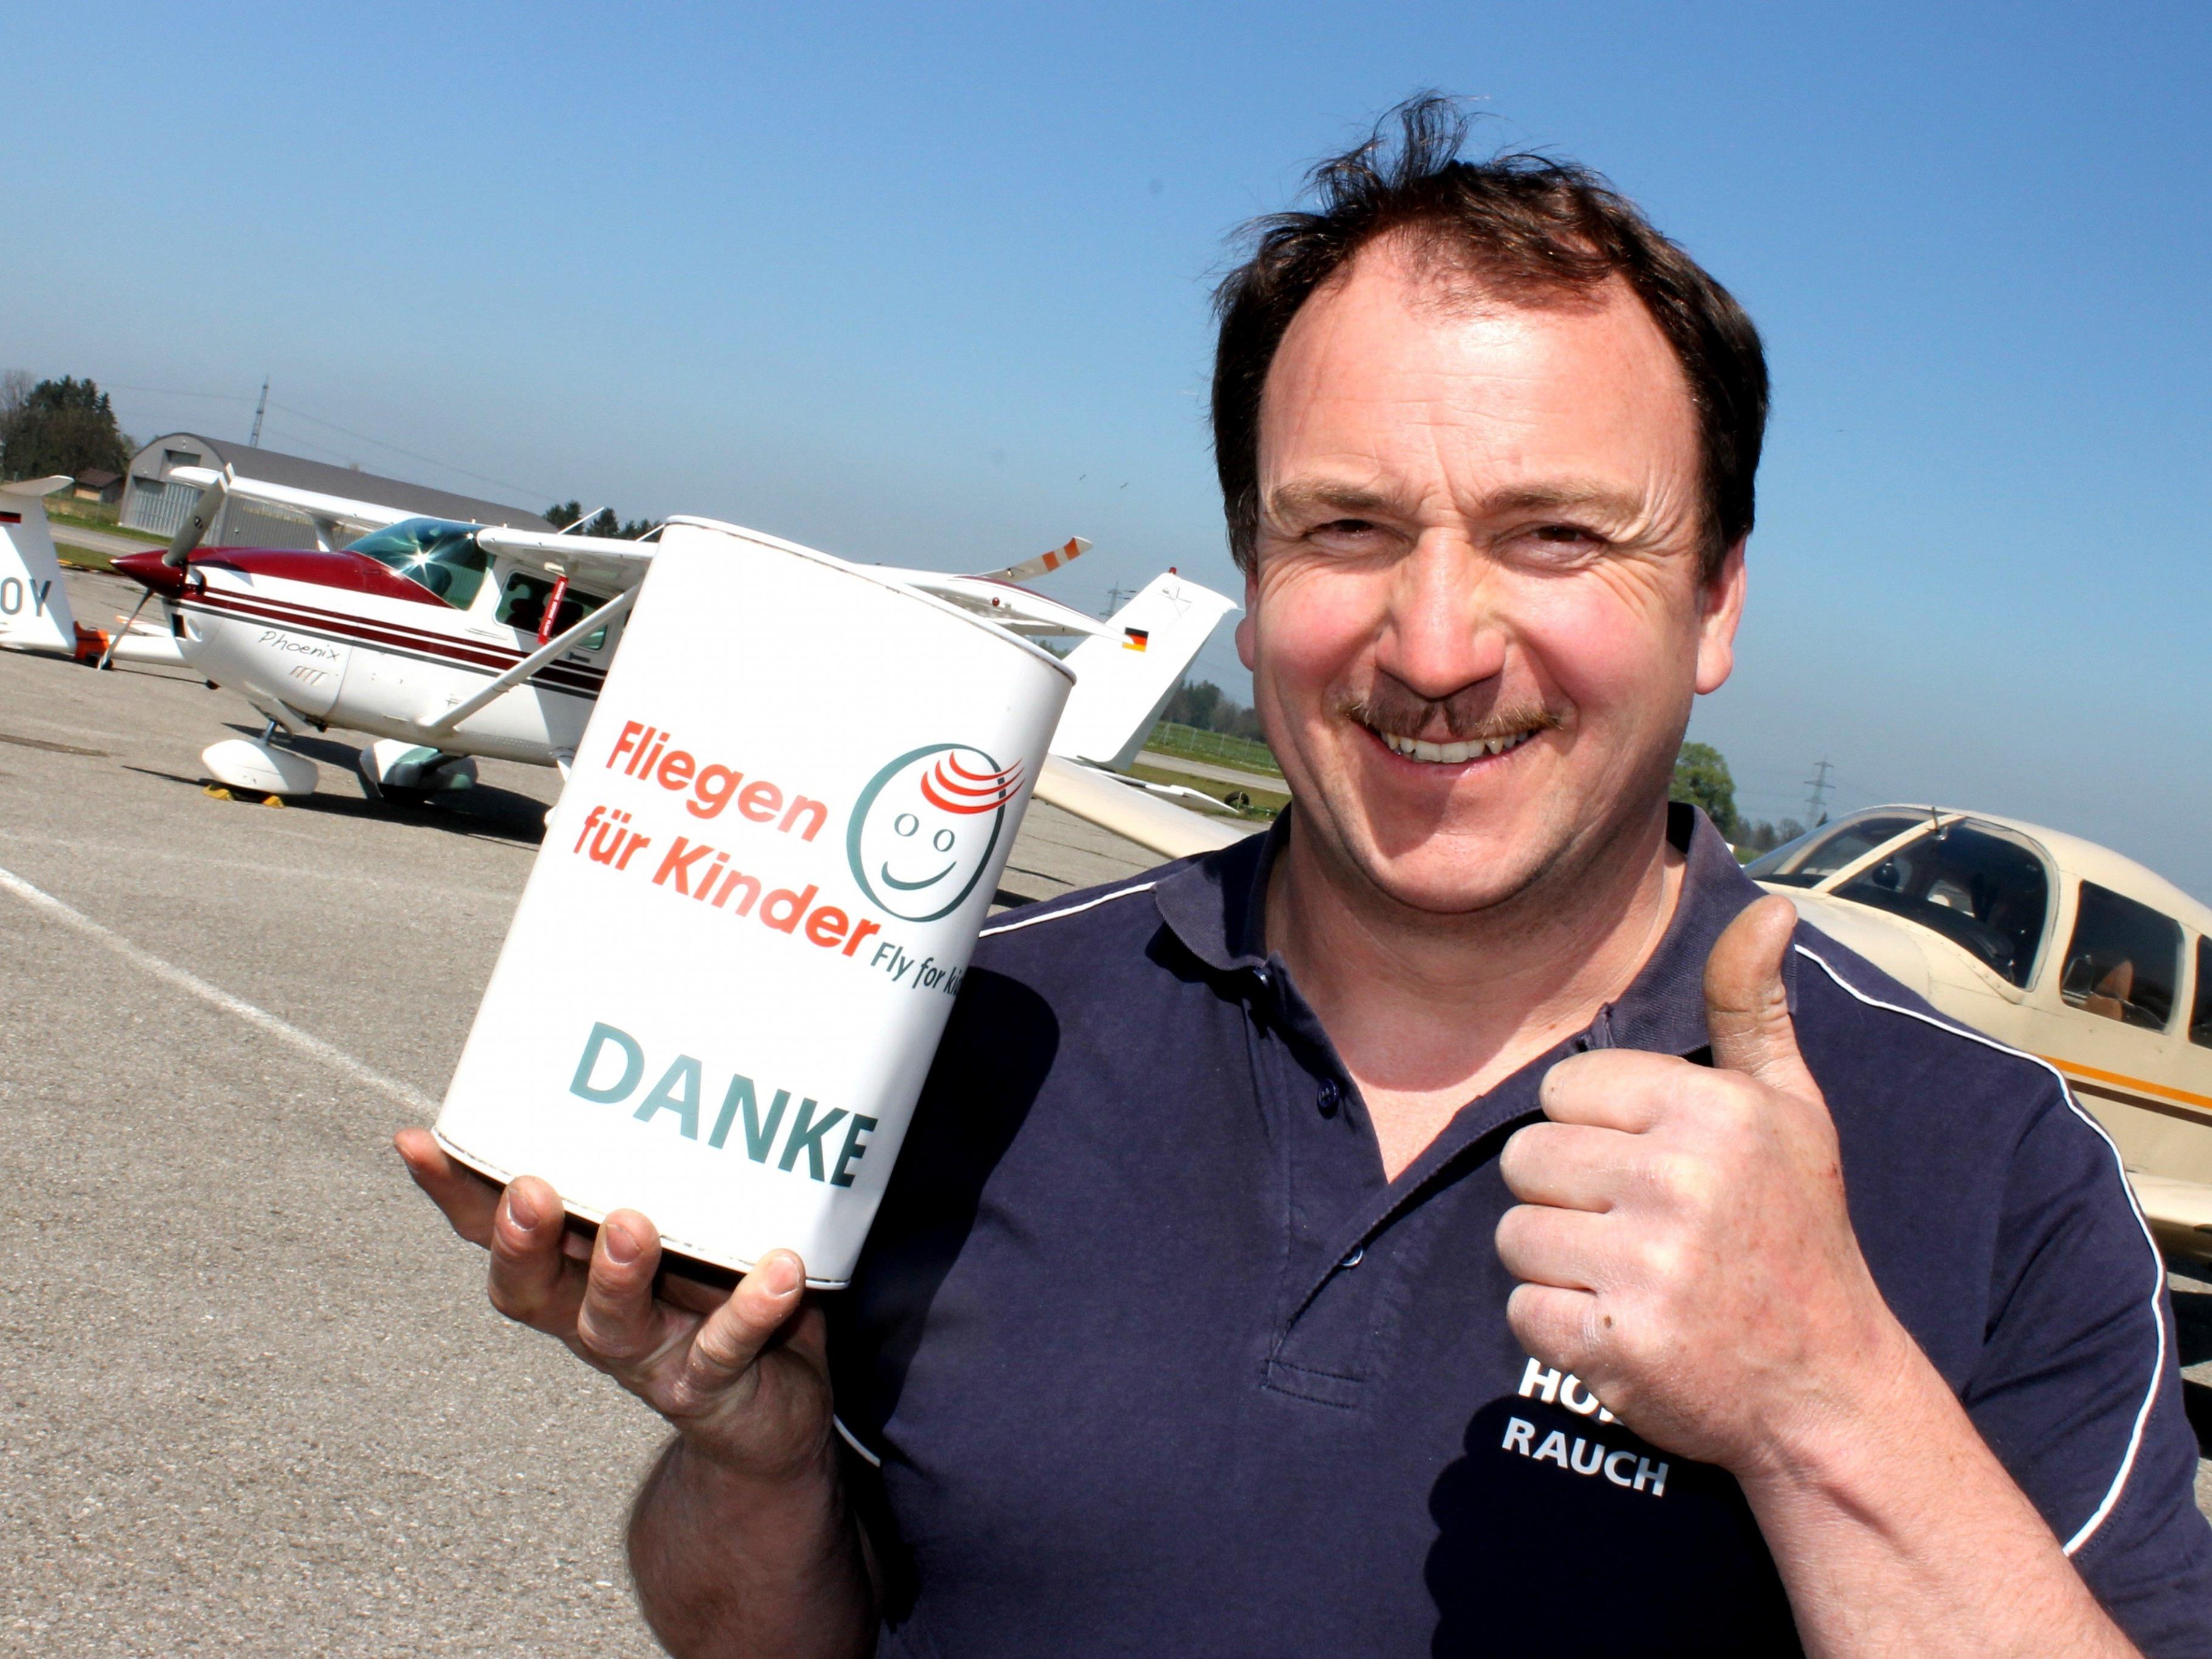 Auch Paul Rauch deponiert eine Flugpatenschaft für 3 Kinder im Sendaböxle zum 17. Kinderflugtag.